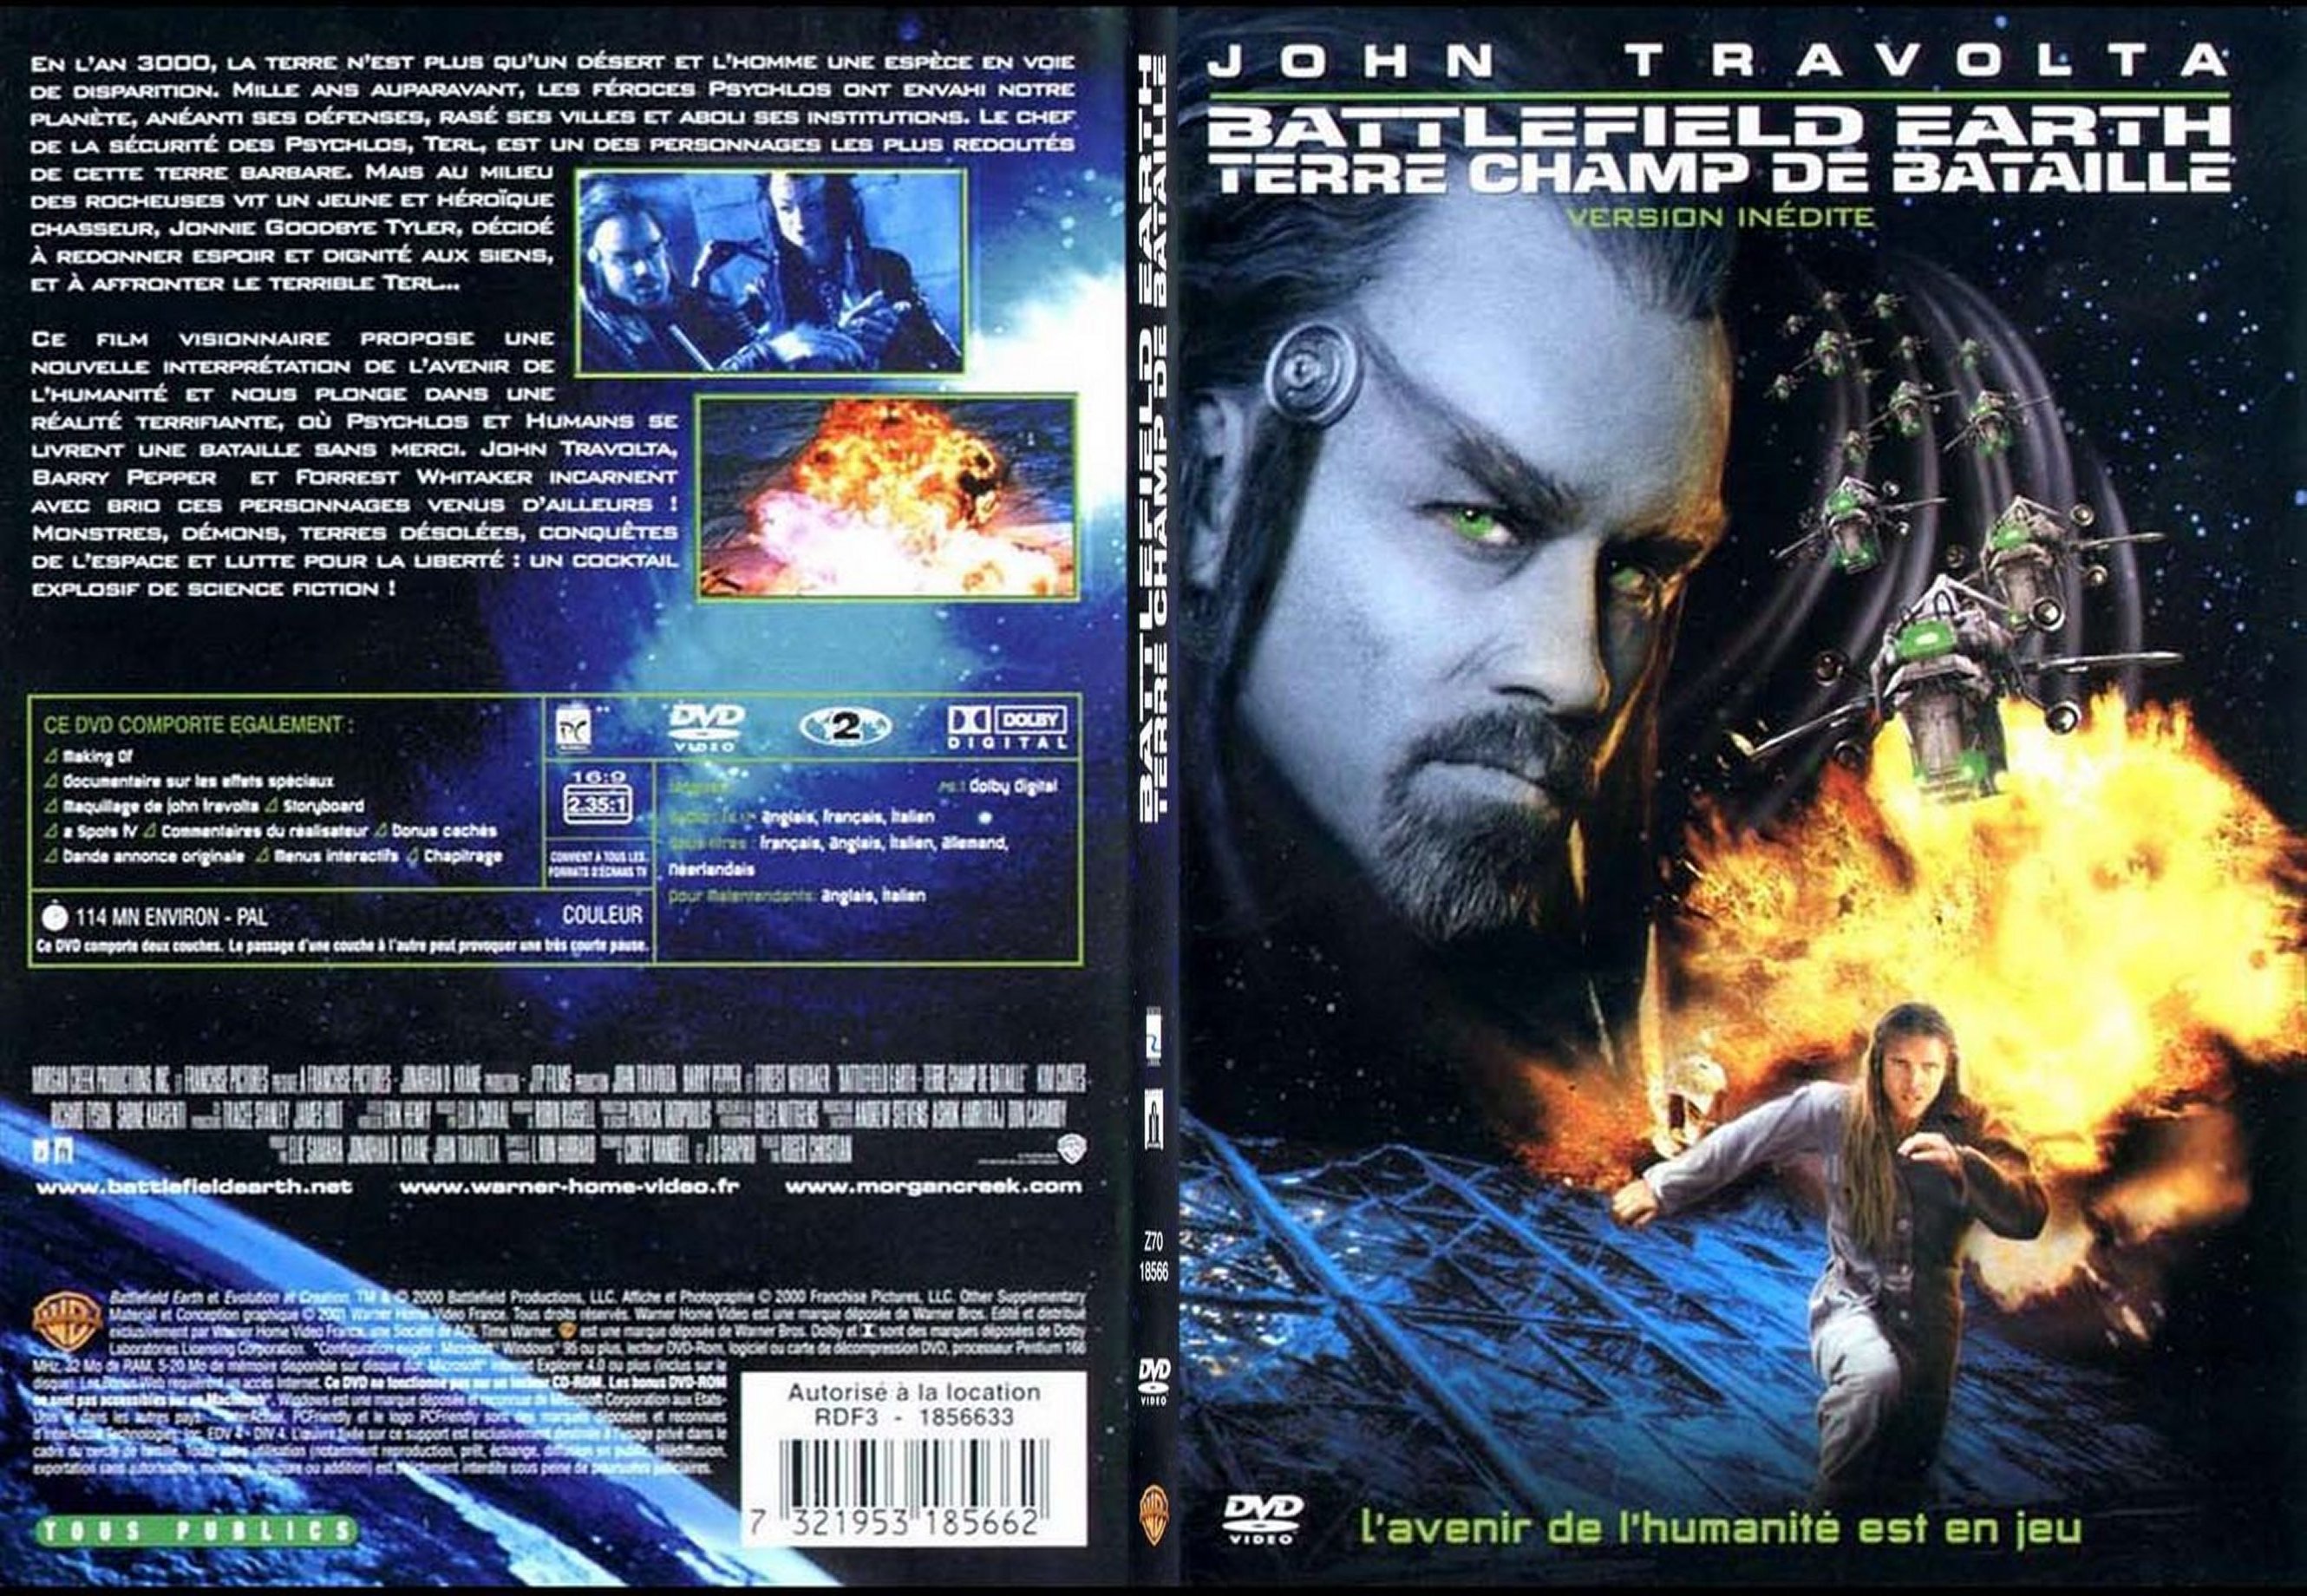 Jaquette DVD Terre champ de bataille - SLIM